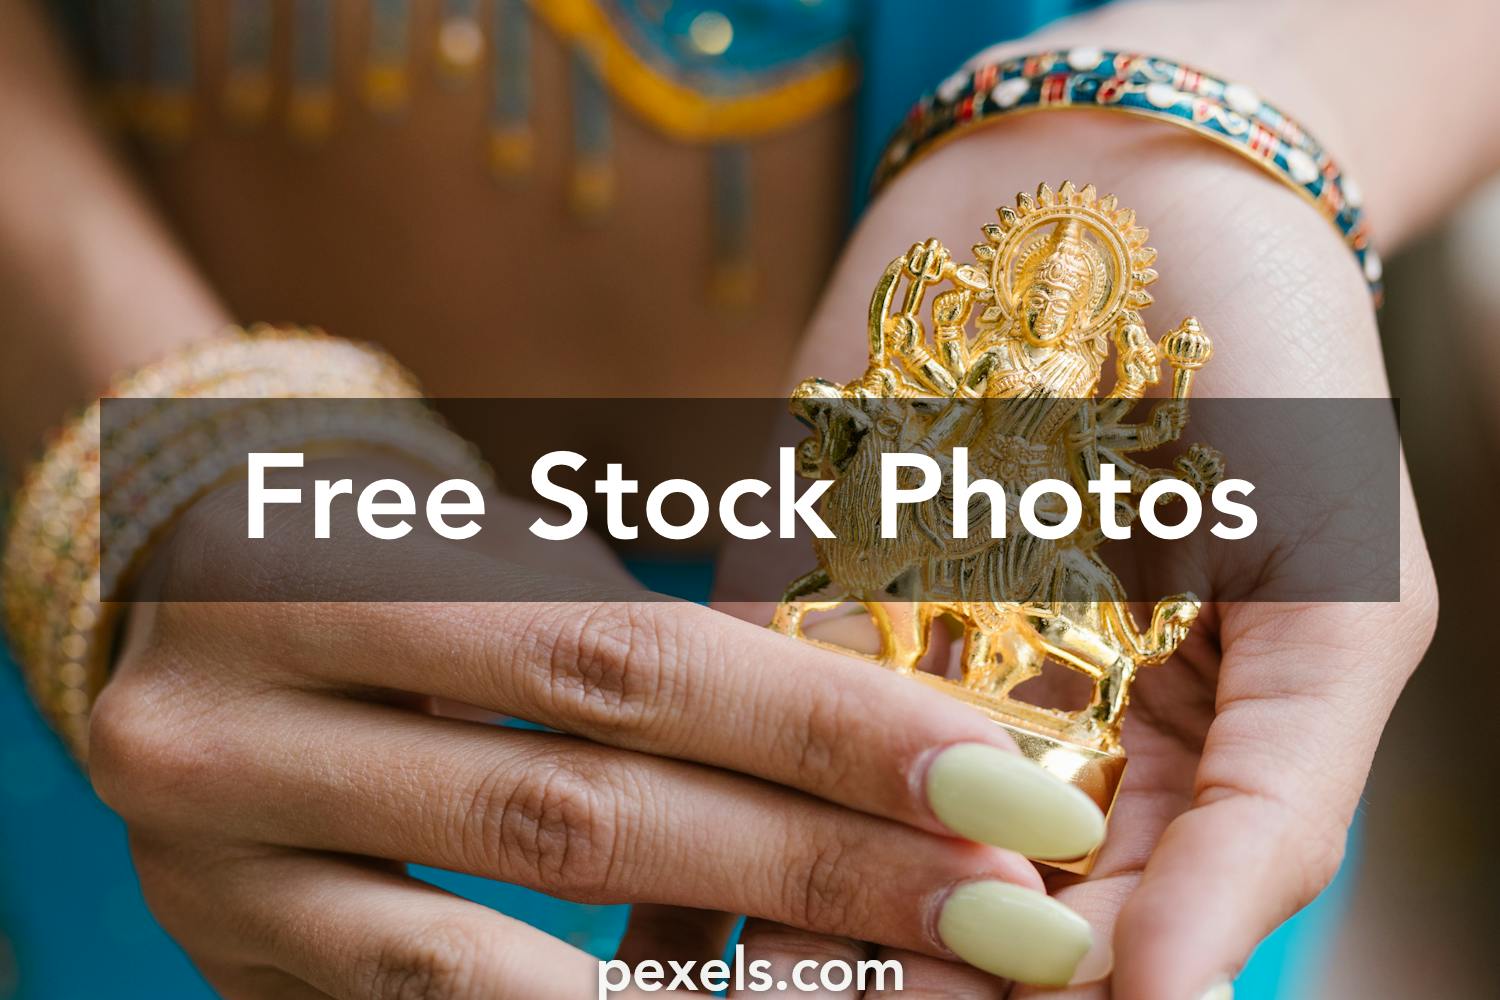 Kanaka Durga Photos, Download The BEST Free Kanaka Durga Stock Photos & HD  Images